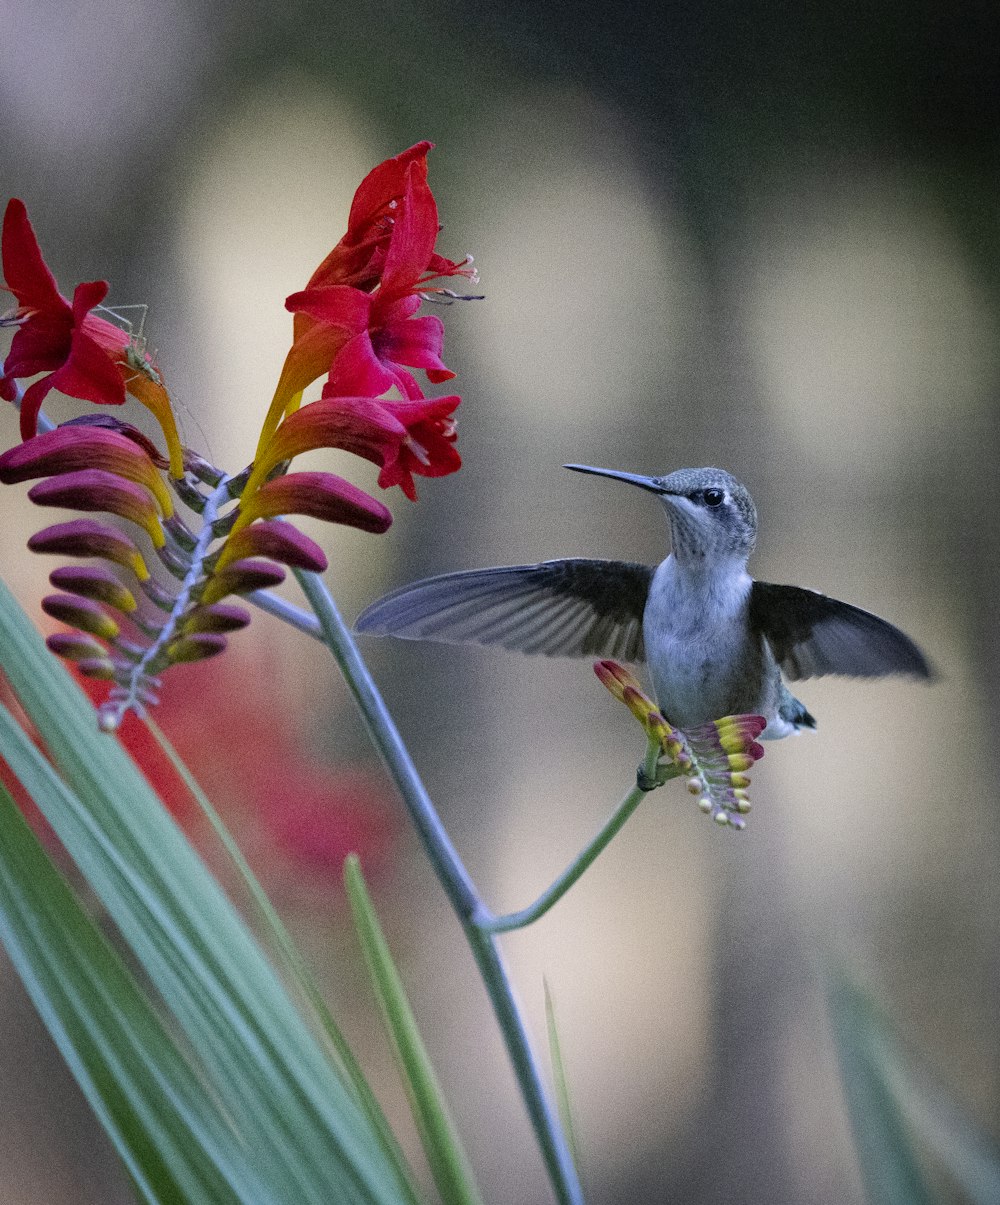 Un colibrí volando hacia una flor